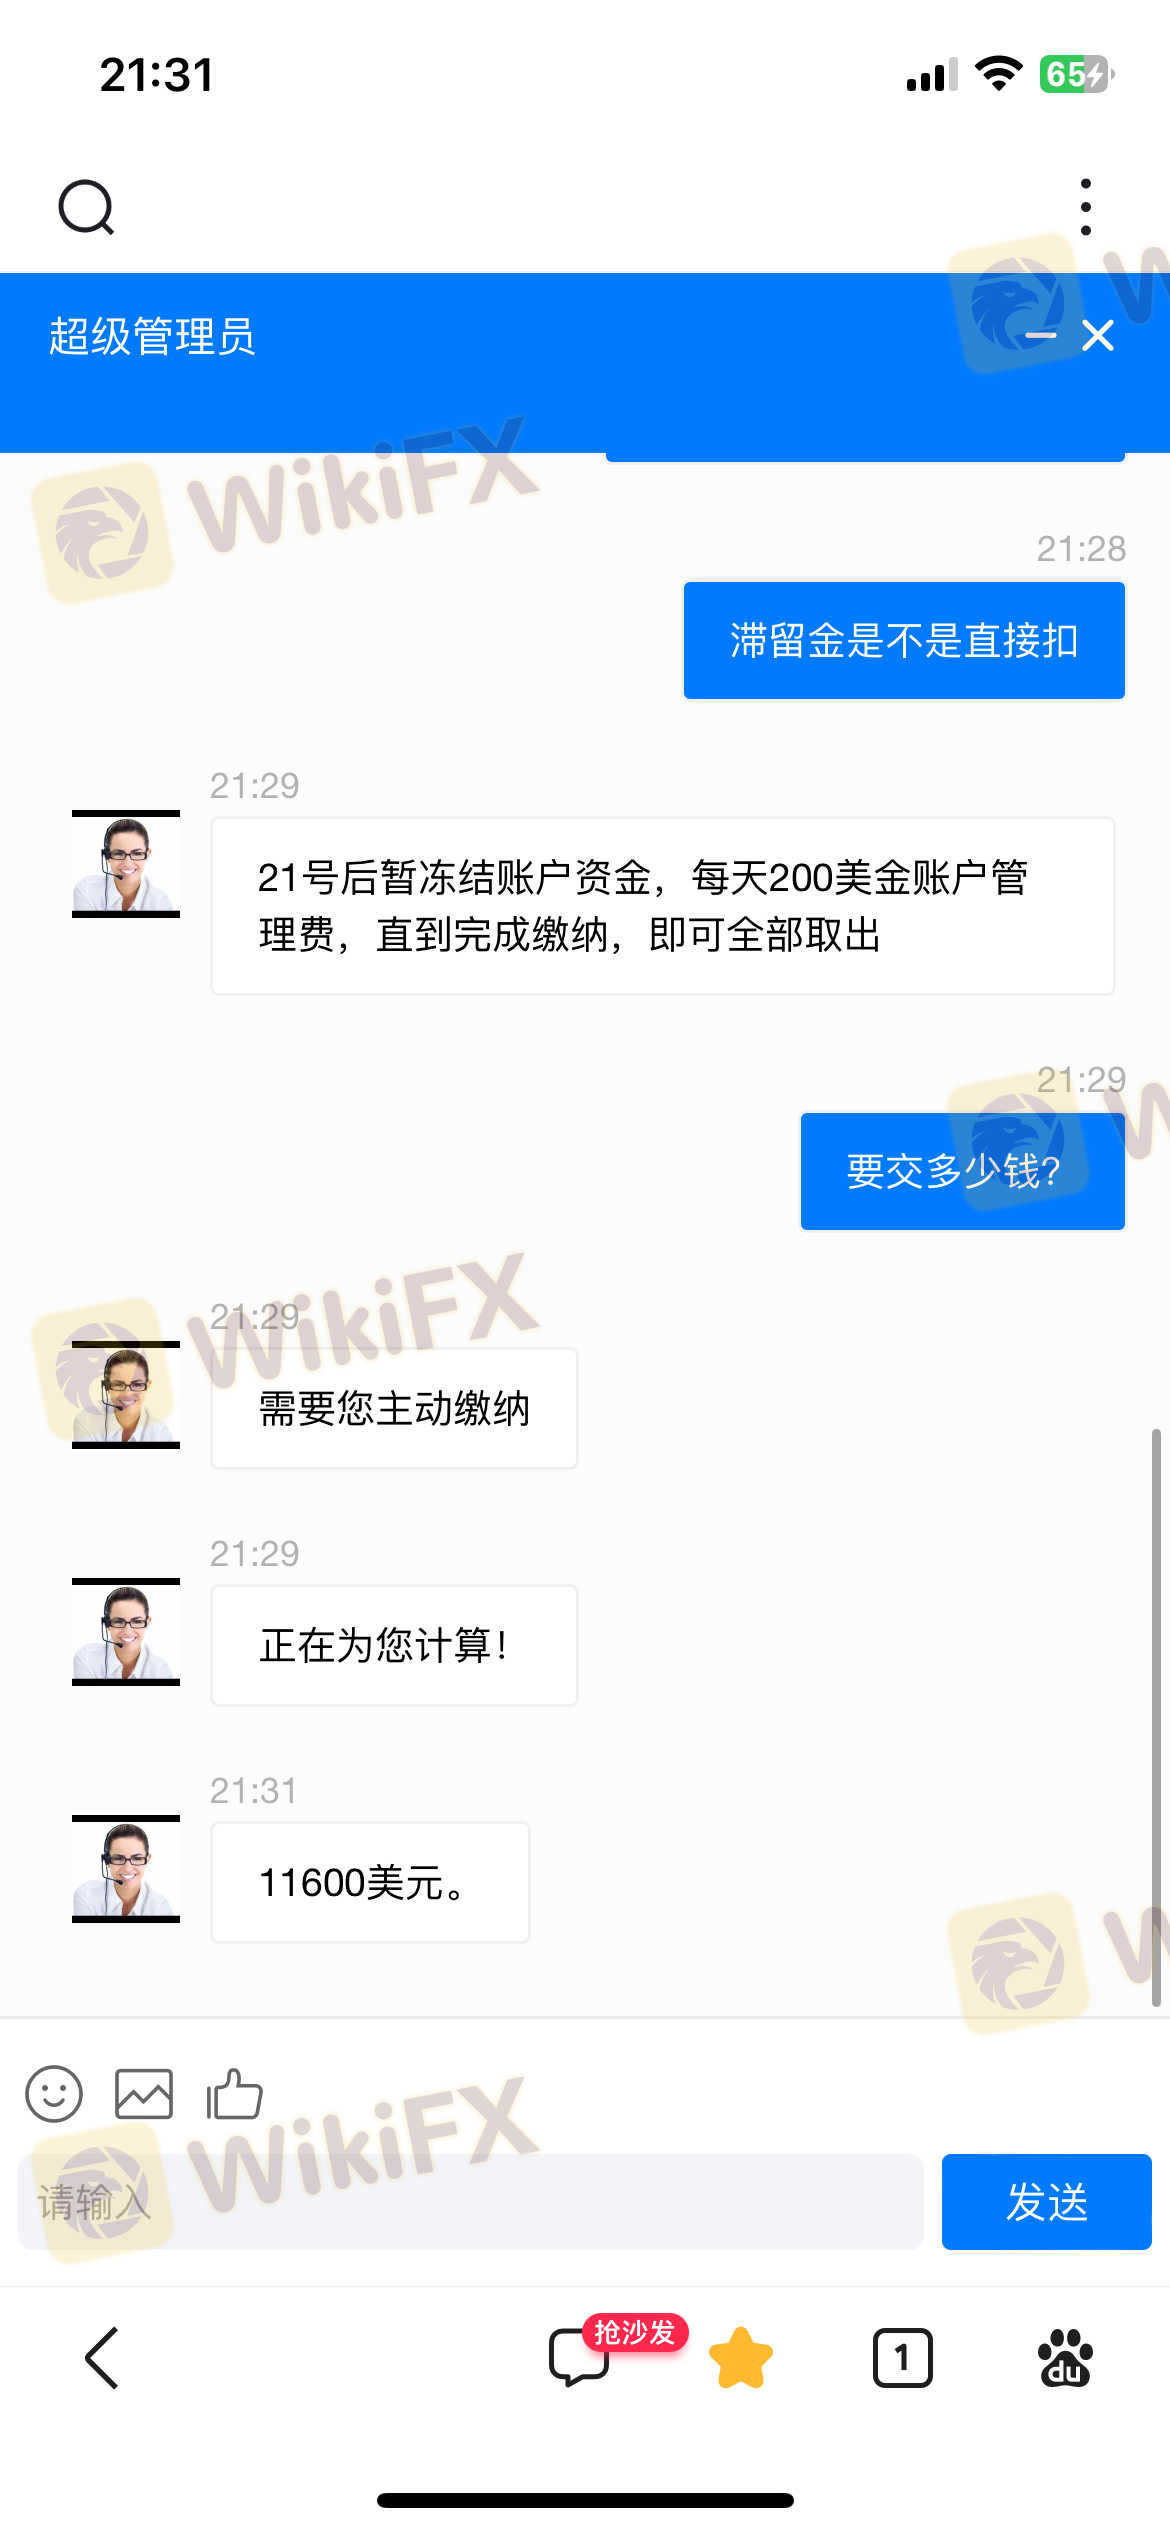 香港sce集团有限，这个app黑平台，我己被骗70万，希望大家不要上当受骗了。现在出不了金